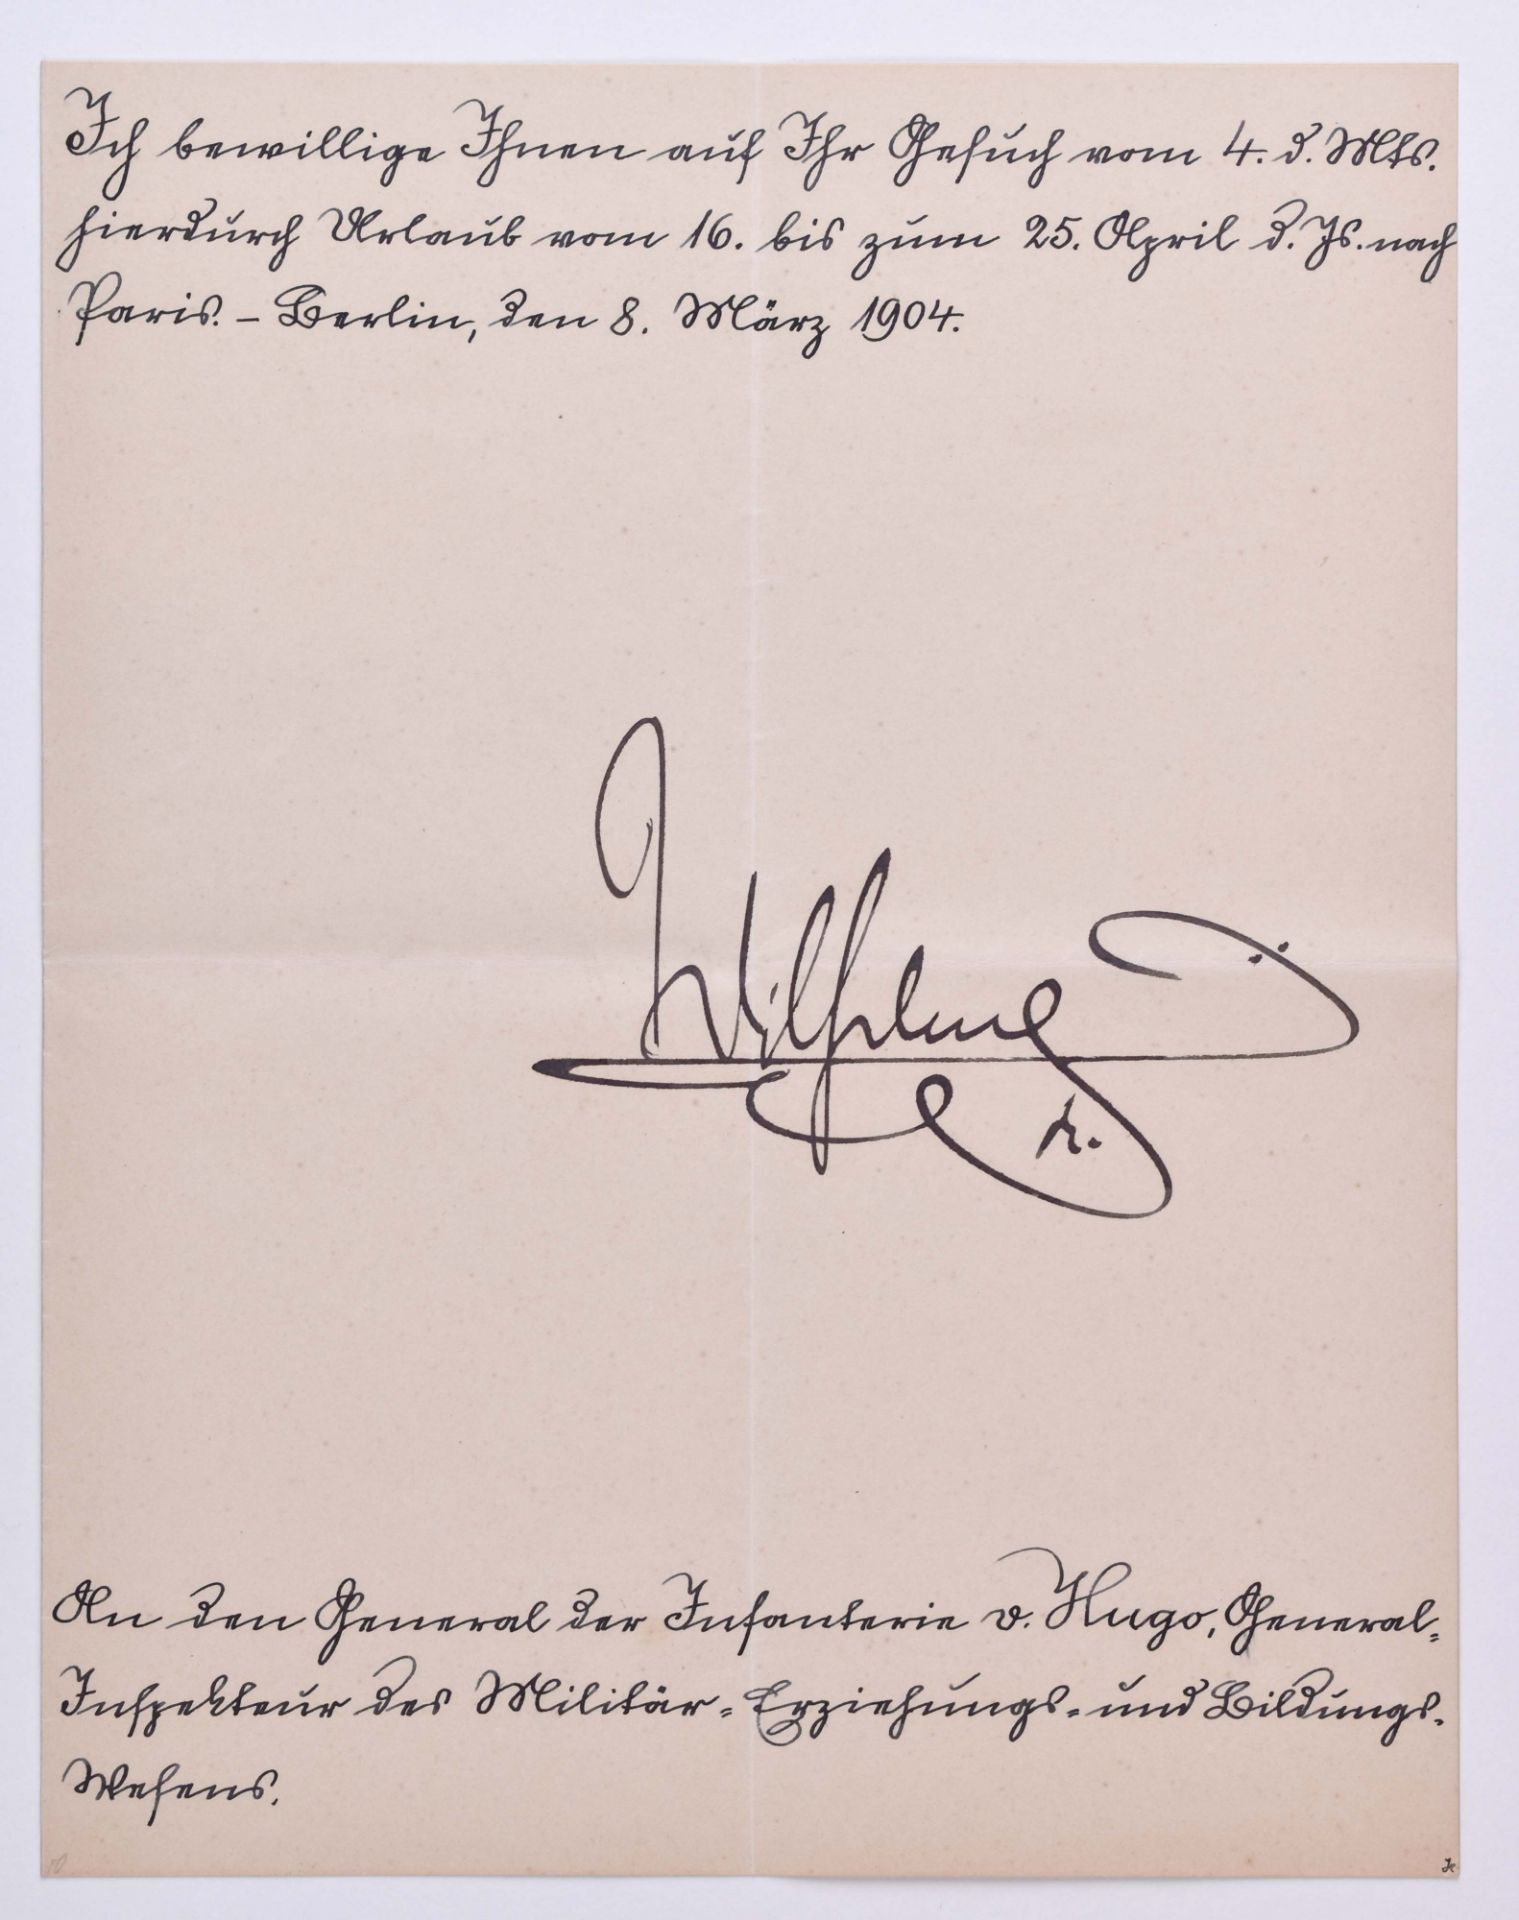 Urlaubsbewilligung vom 8.3.1904Urlaubsbewilligung für General der Infantrie Carl-Georg von Hugo, mit